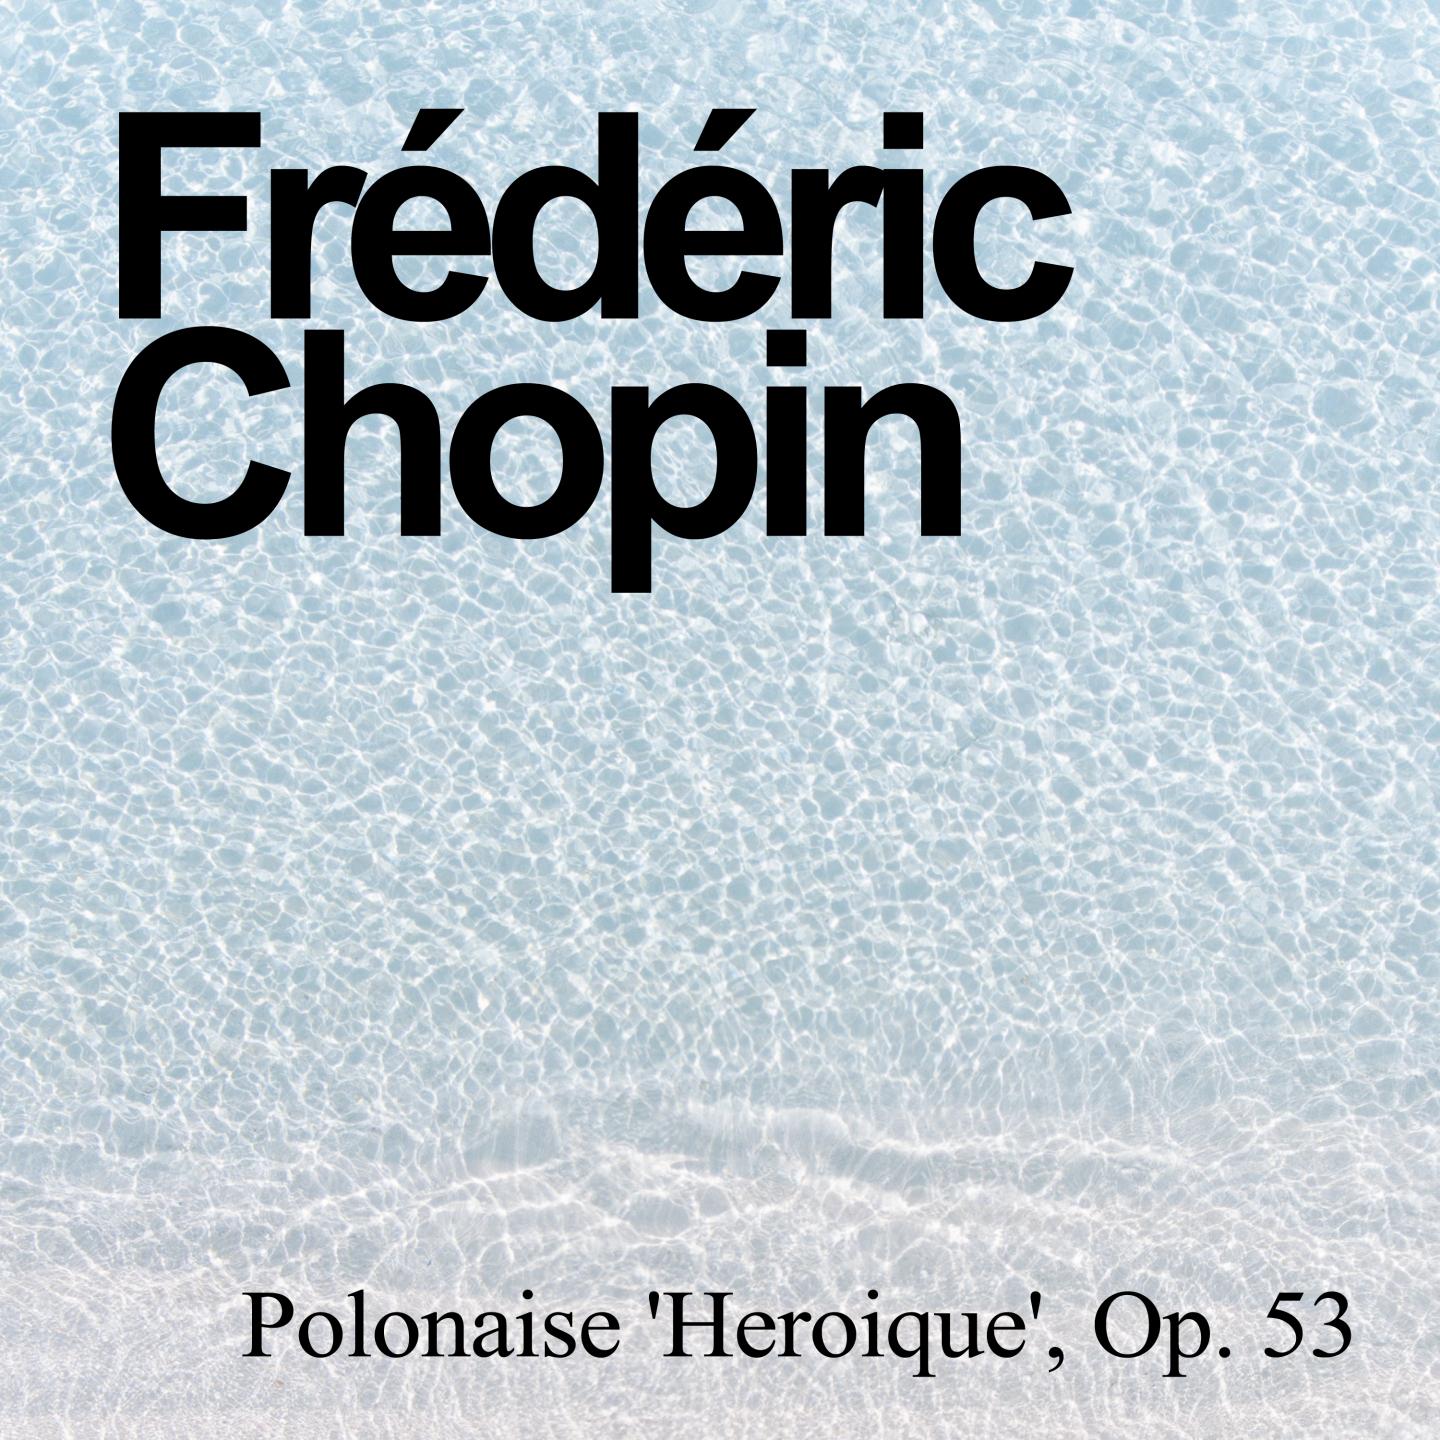 Polonaise 'Heroique', Op. 53